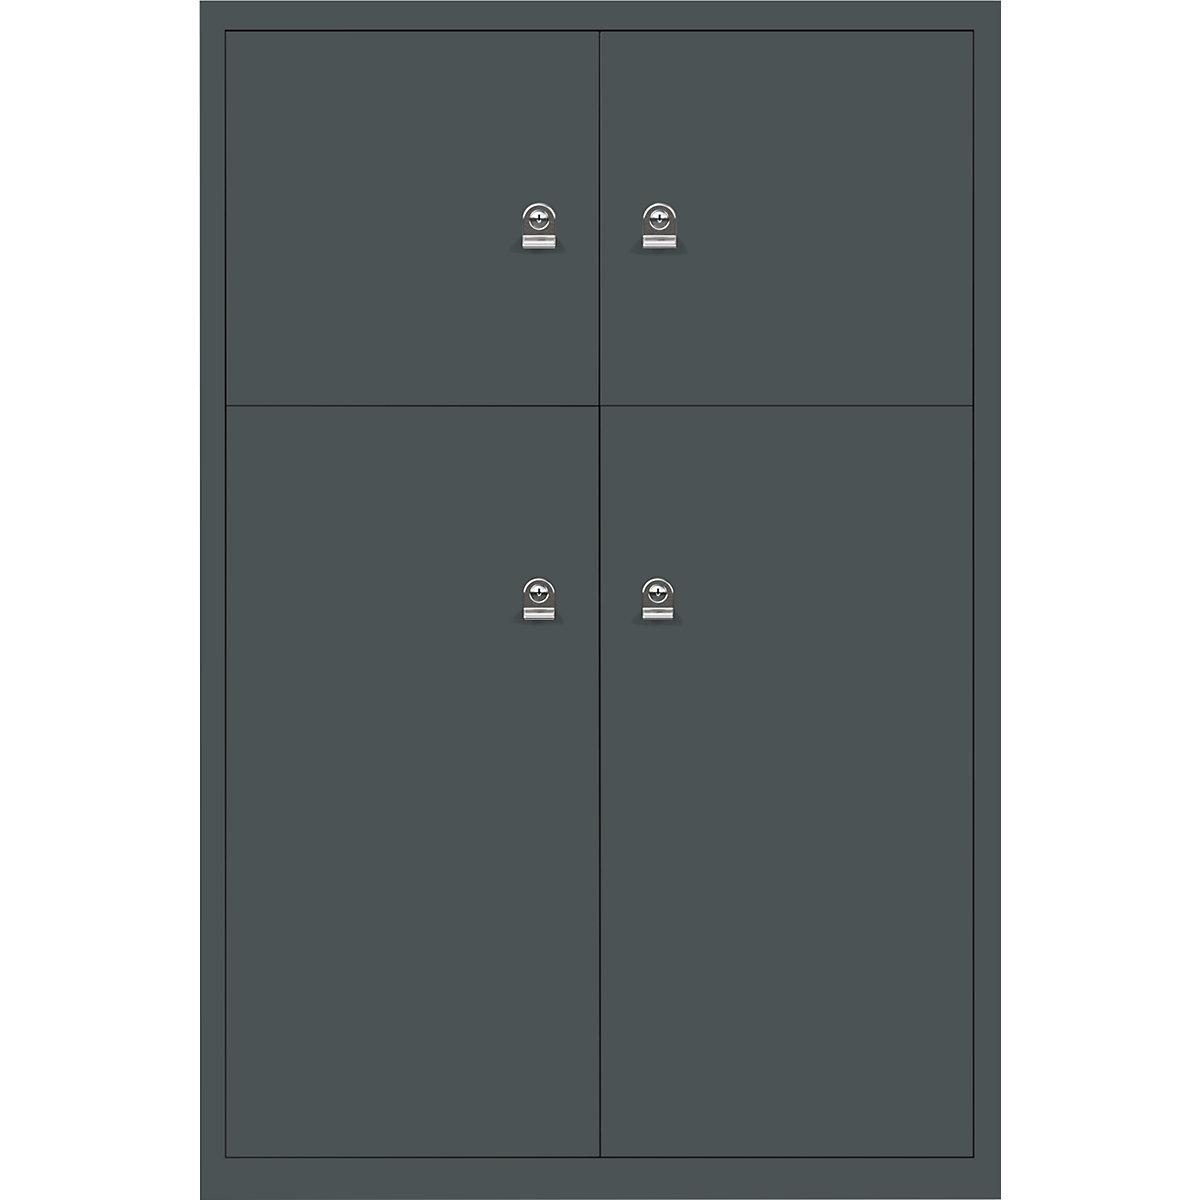 Omara s predelki z zaklepanjem LateralFile™ – BISLEY, 4 predelki z zaklepanjem, višina 2 x 375 mm, 2 x 755 mm, skrilasto sive barve-12